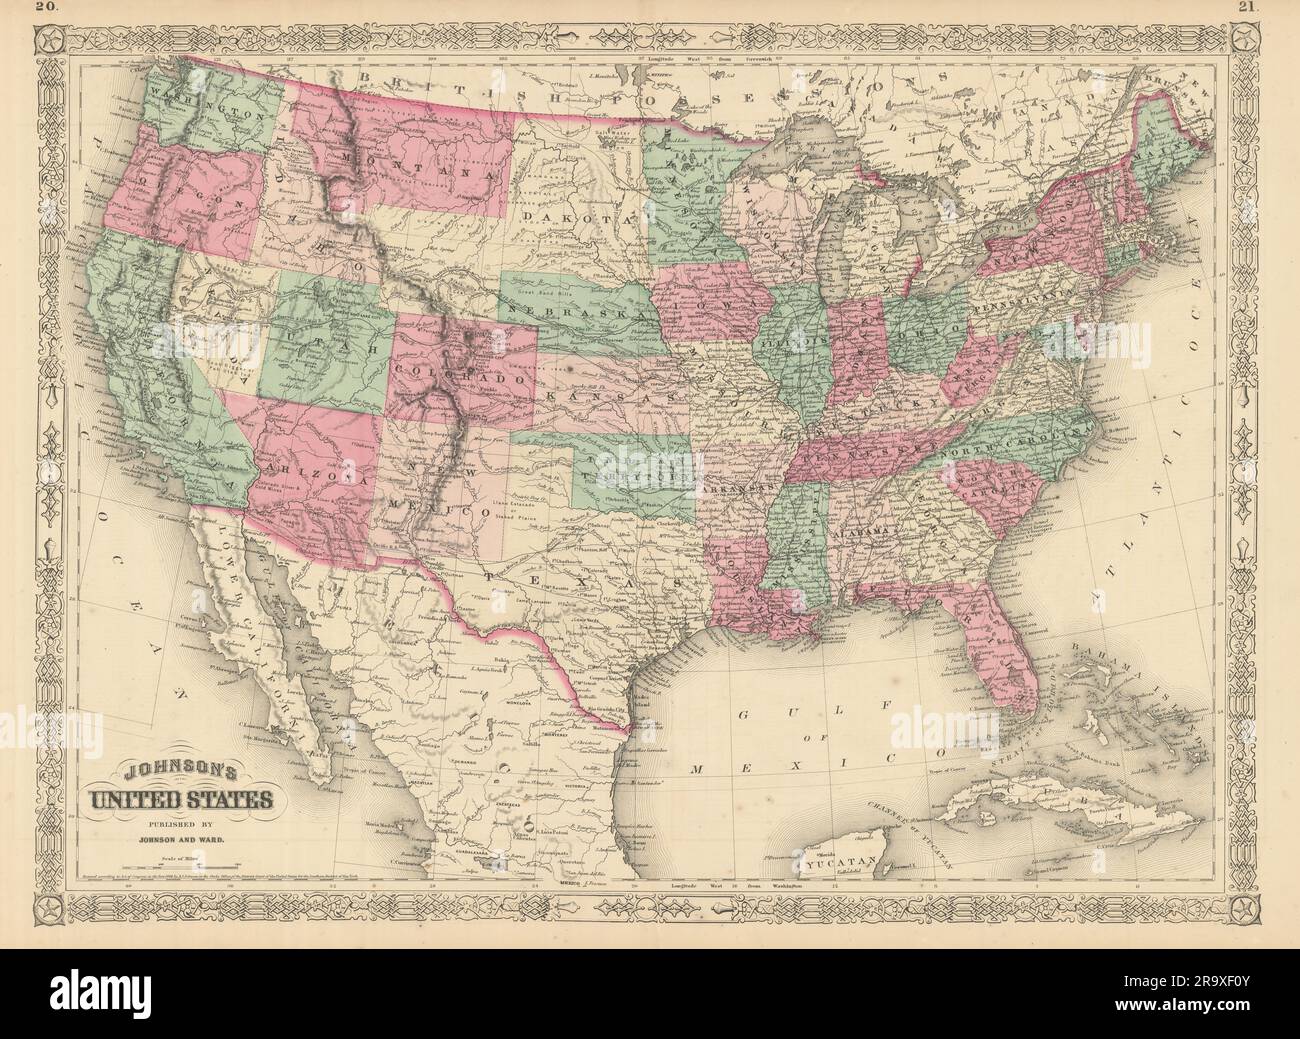 Gli Stati Uniti di Johnson. Wyoming parte del territorio del Dakota 1866 vecchia mappa antica Foto Stock